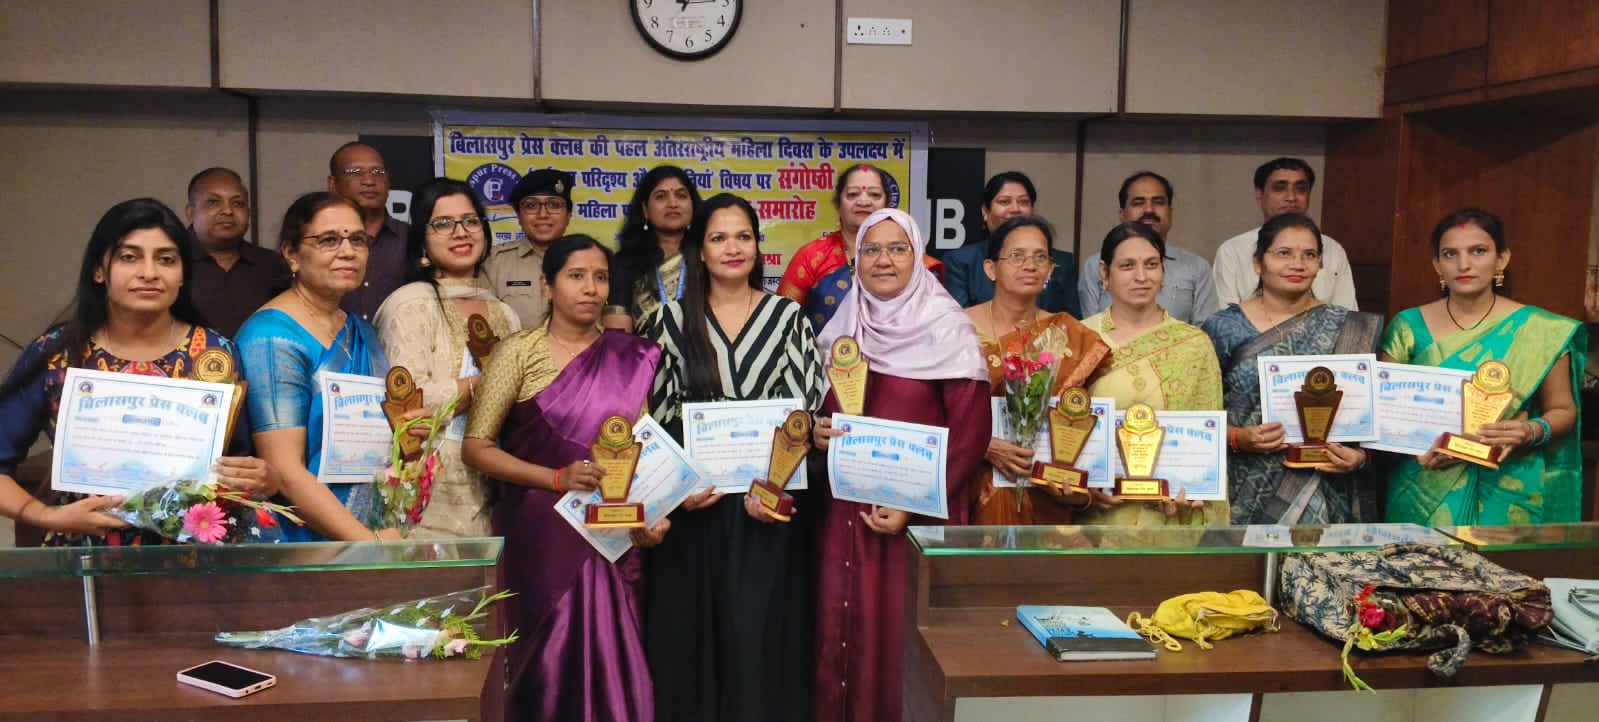 अंतराष्ट्रीय महिला दिवस के उपलक्ष्य पर बिलासपुर प्रेस क्लब में संगोष्ठी व महिला पत्रकारों का हुआ सम्मान… आईपीएस, प्रिंसिपल और प्रोफेसर ने की सराहना…। स्त्रियां तभी आगे बढ़ती हैं, जब पुरुष उनका सम्मान करते हैं:–प्रो.अंजू शुक्ला…